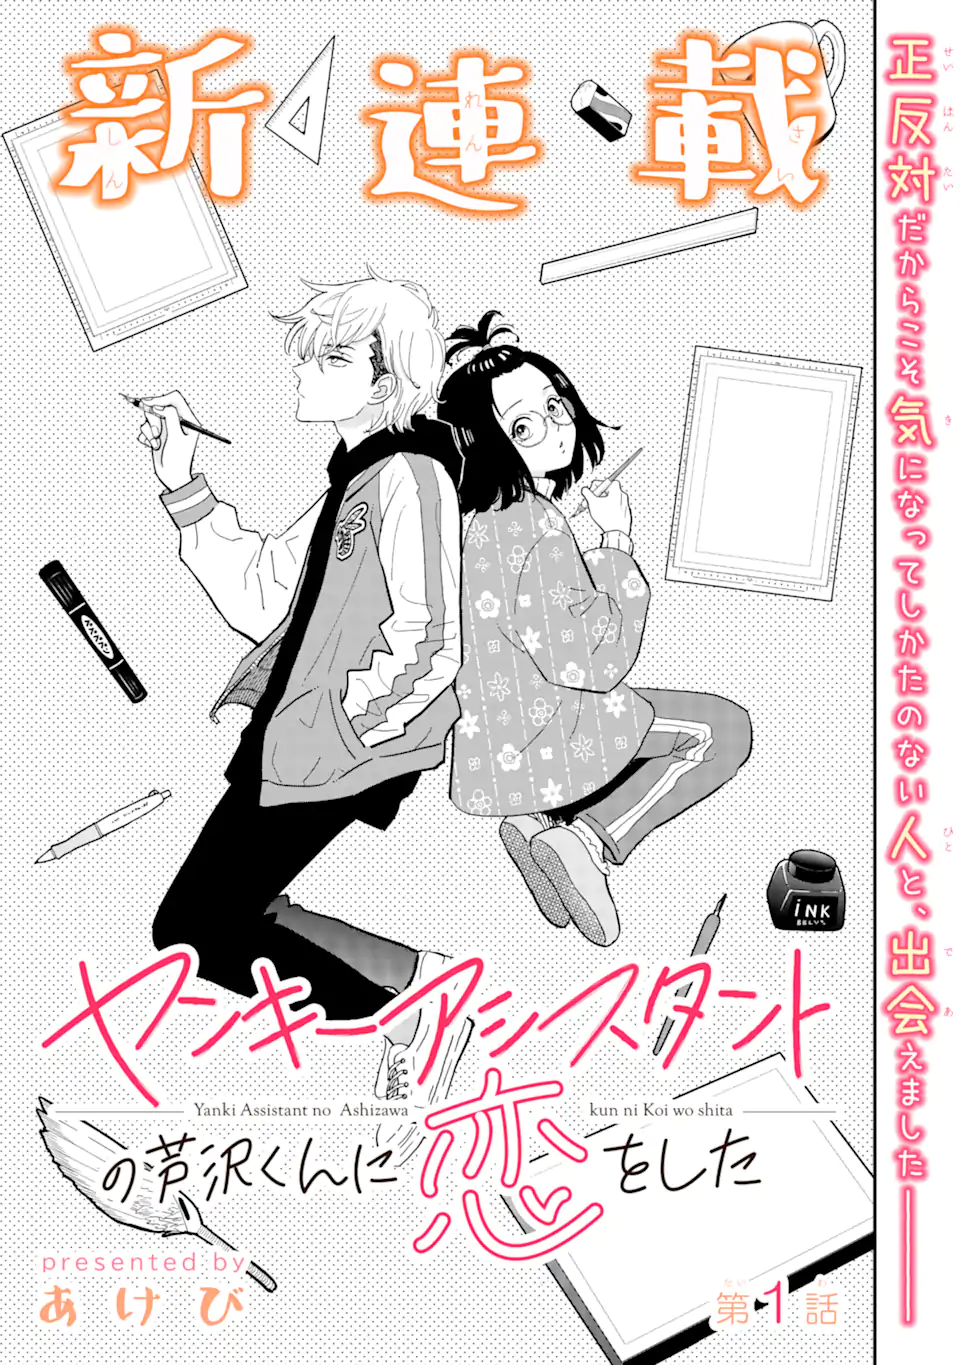 Yankee Assistant no Ashizawa-kun ni Koi wo shita - Chapter 1.1 - Page 3